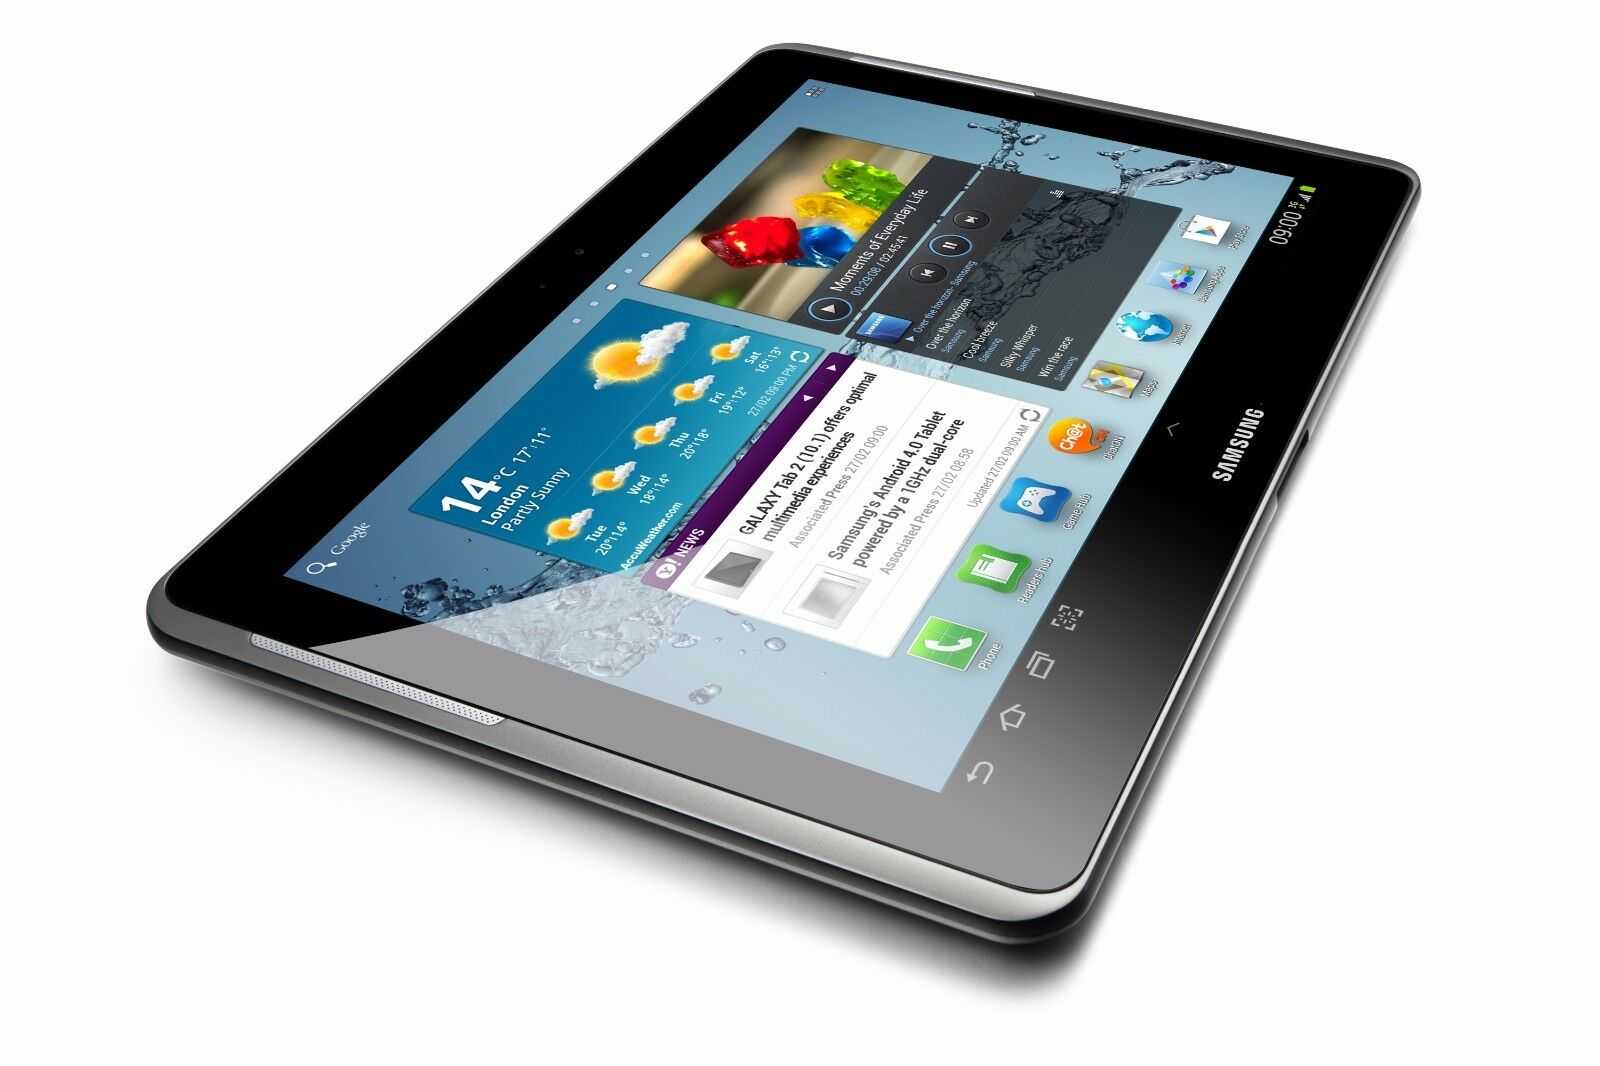 Samsung galaxy tab 2 10.1 p5100 16gb купить по акционной цене , отзывы и обзоры.